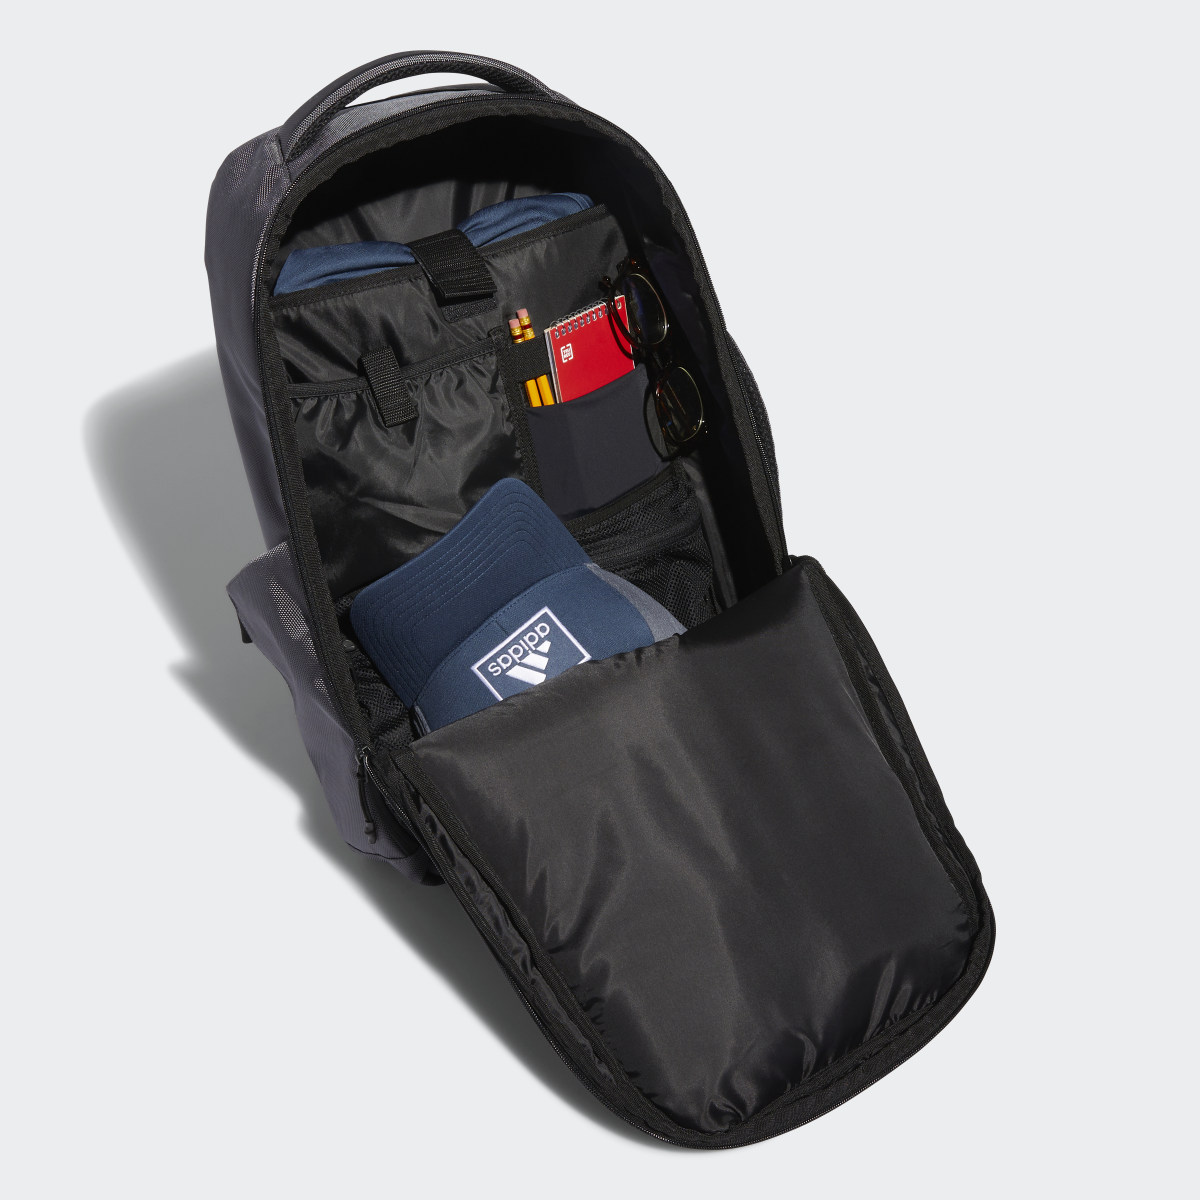 Adidas Golf Premium Rucksack. 5